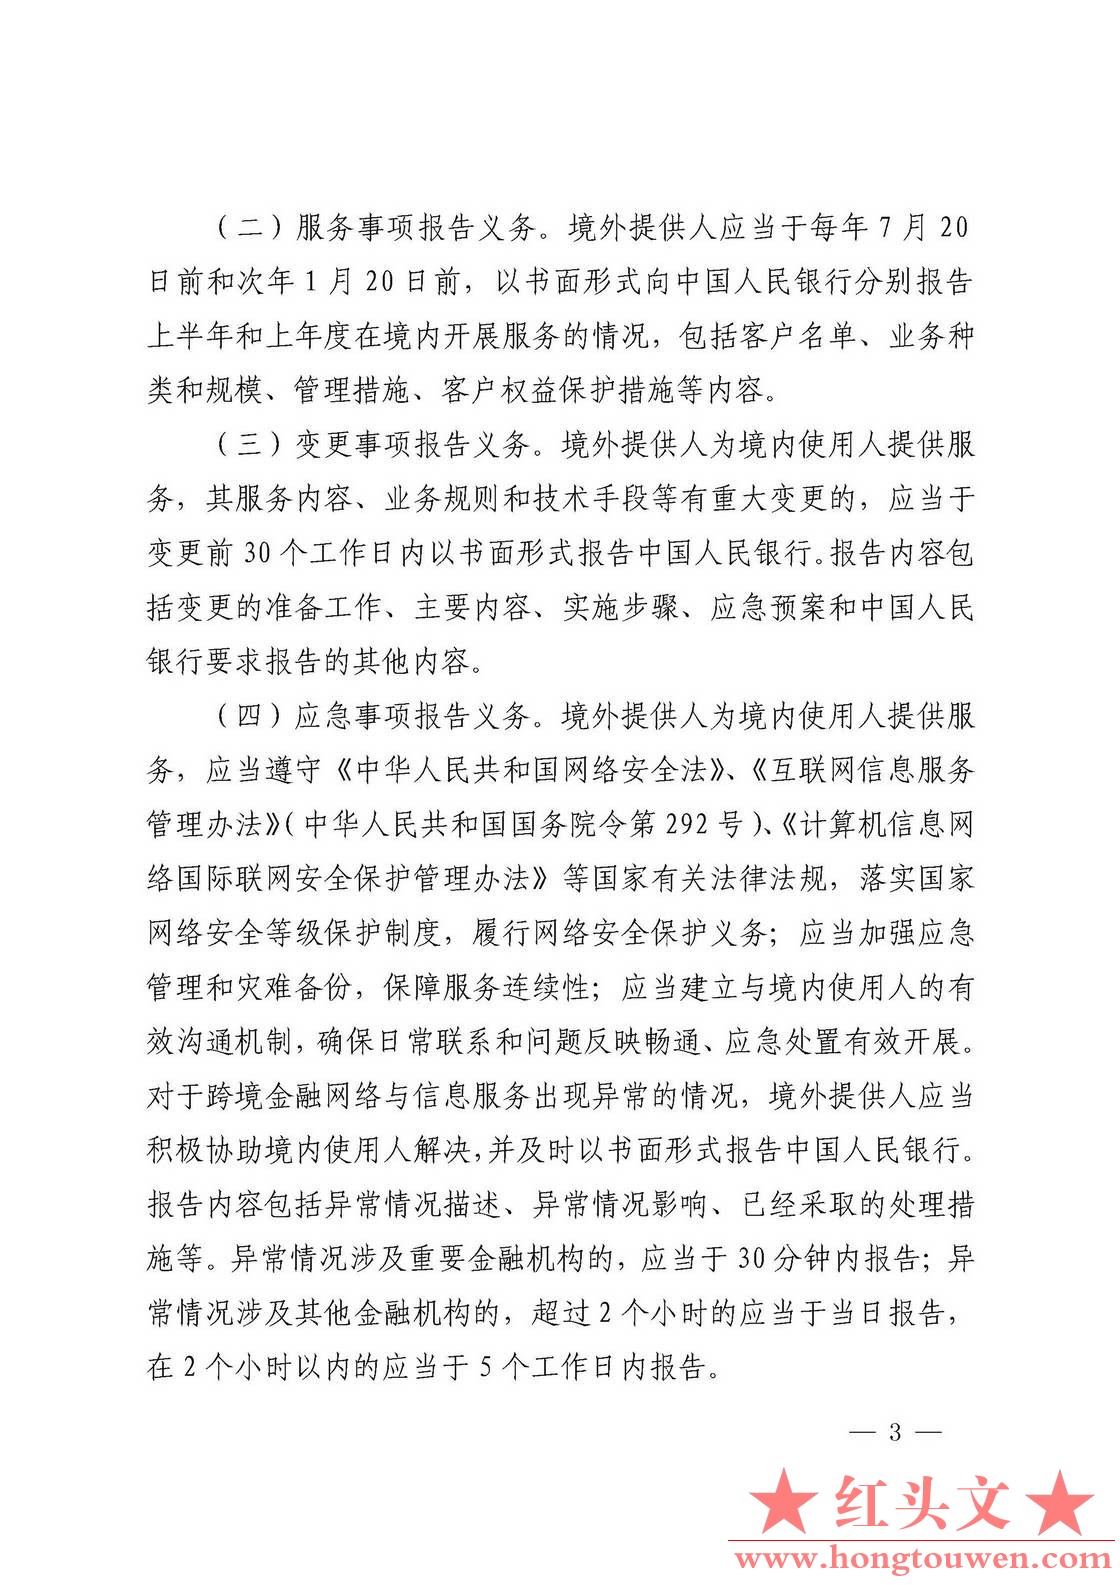 银发[2018]176号-中国人民银行关于加强跨境金融网络与信息服务管理的通知_页面_3.jpg.jpg